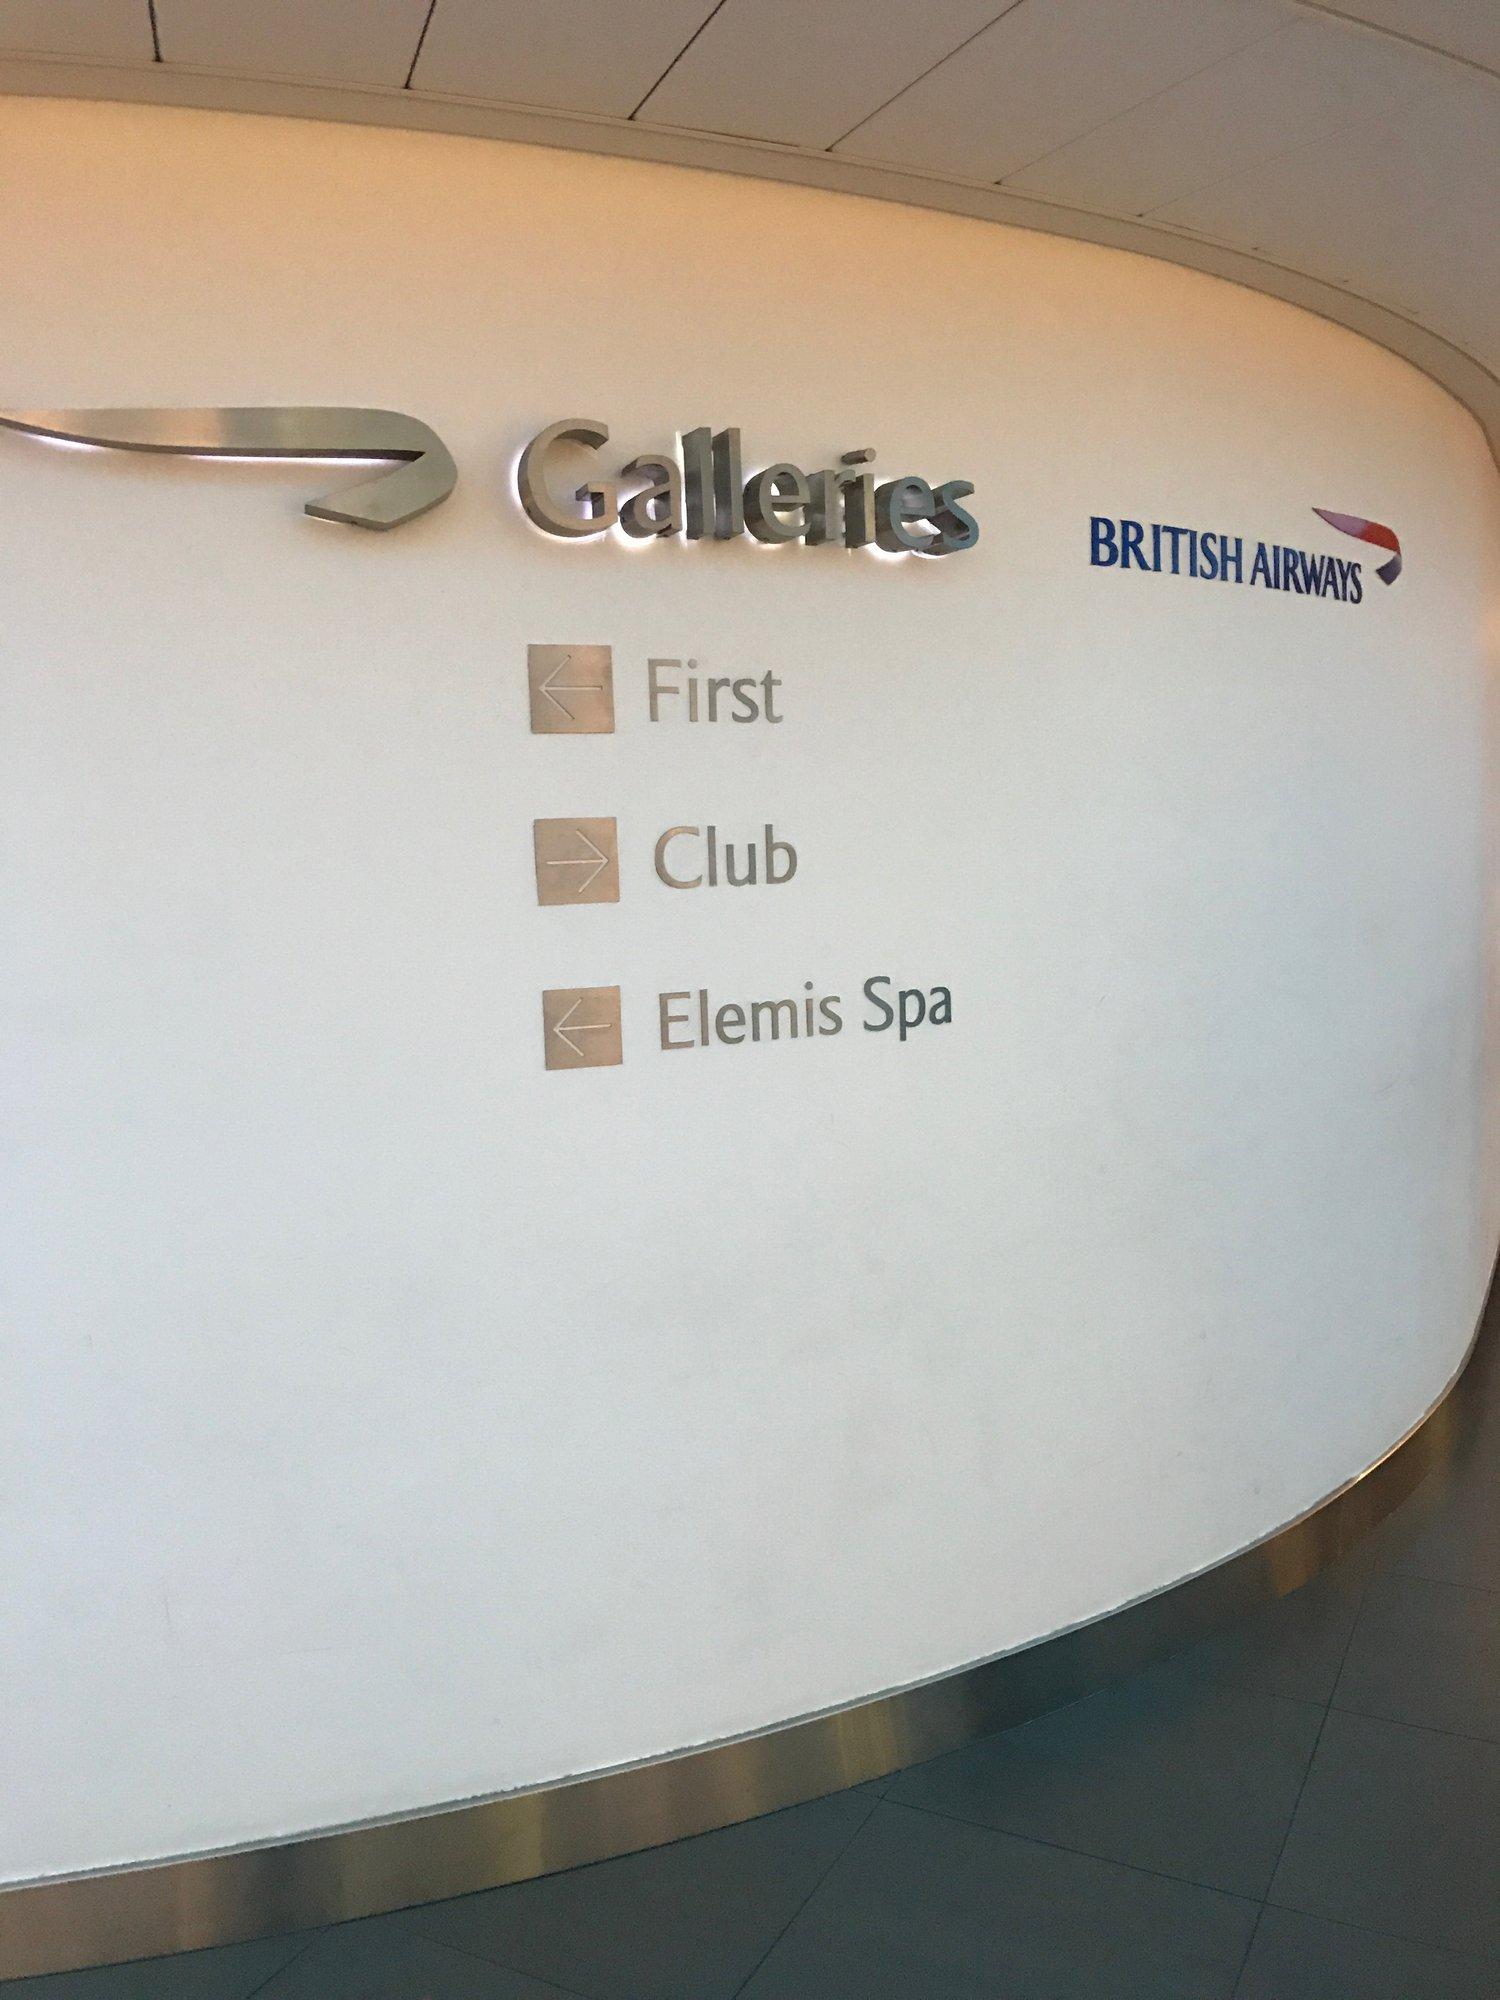 British Airways Galleries First Lounge image 17 of 38